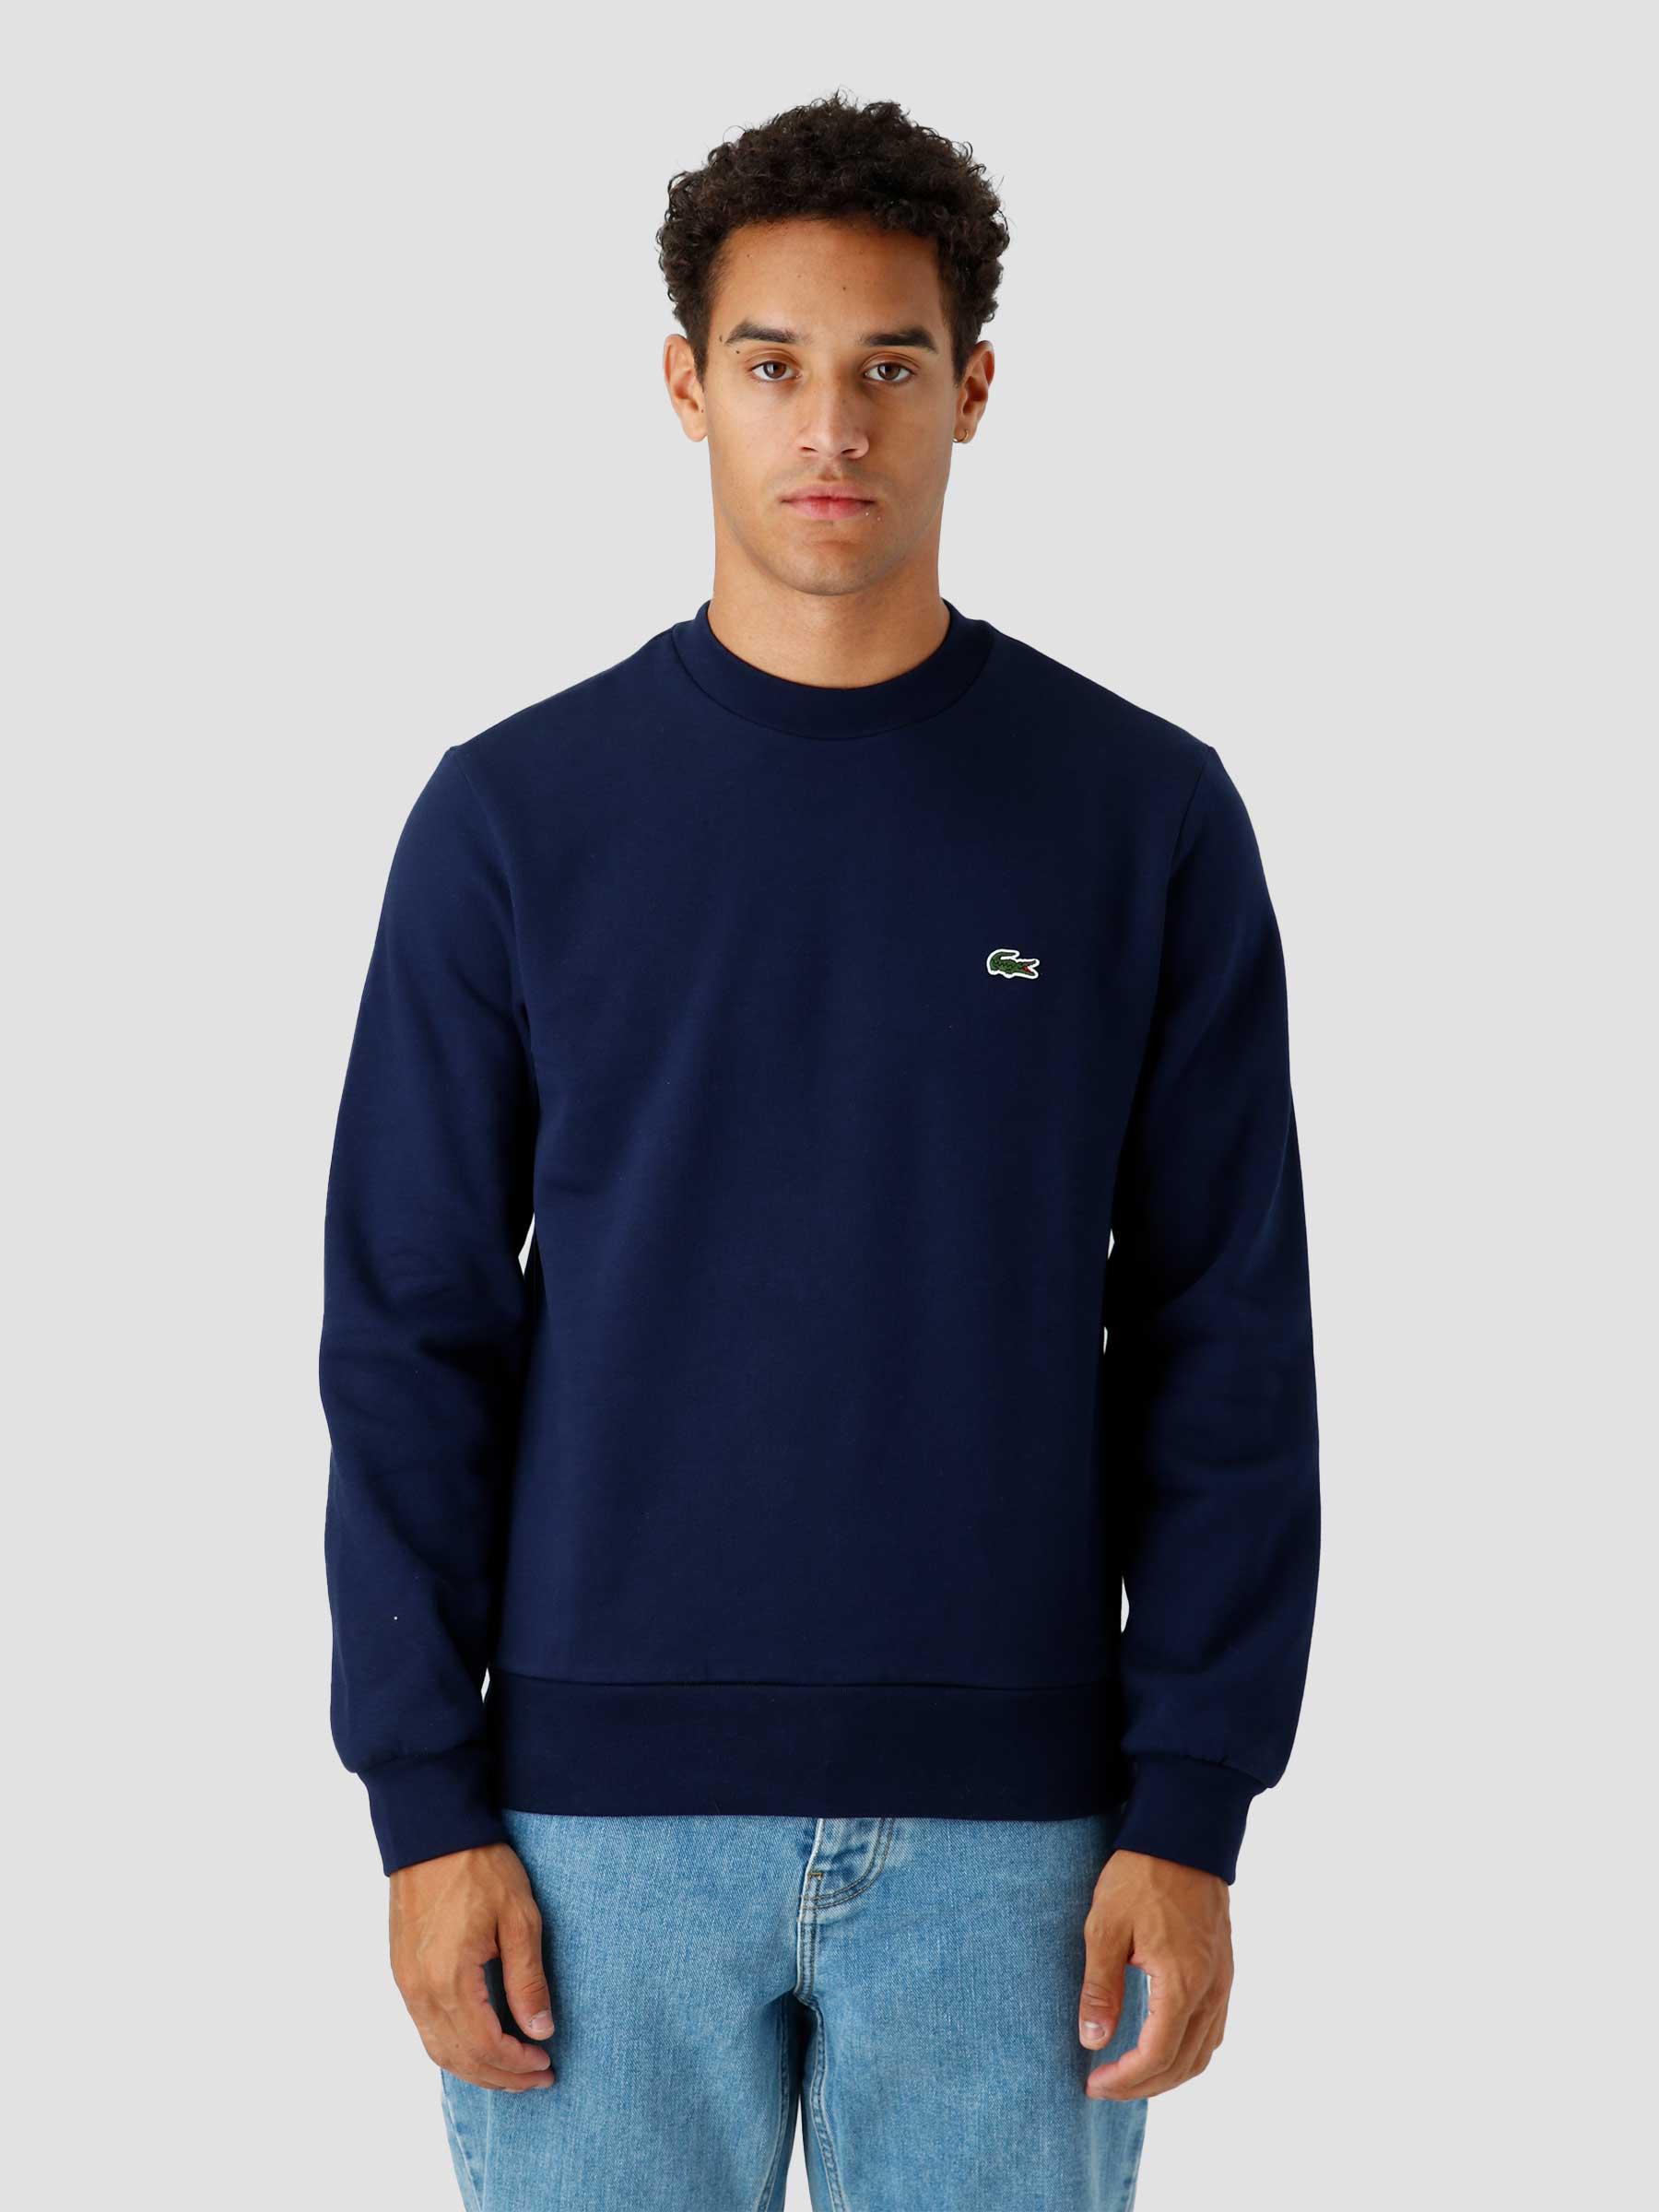 1Hs1 Men'S Sweatshirt 07 Navy Blue SH9608-23